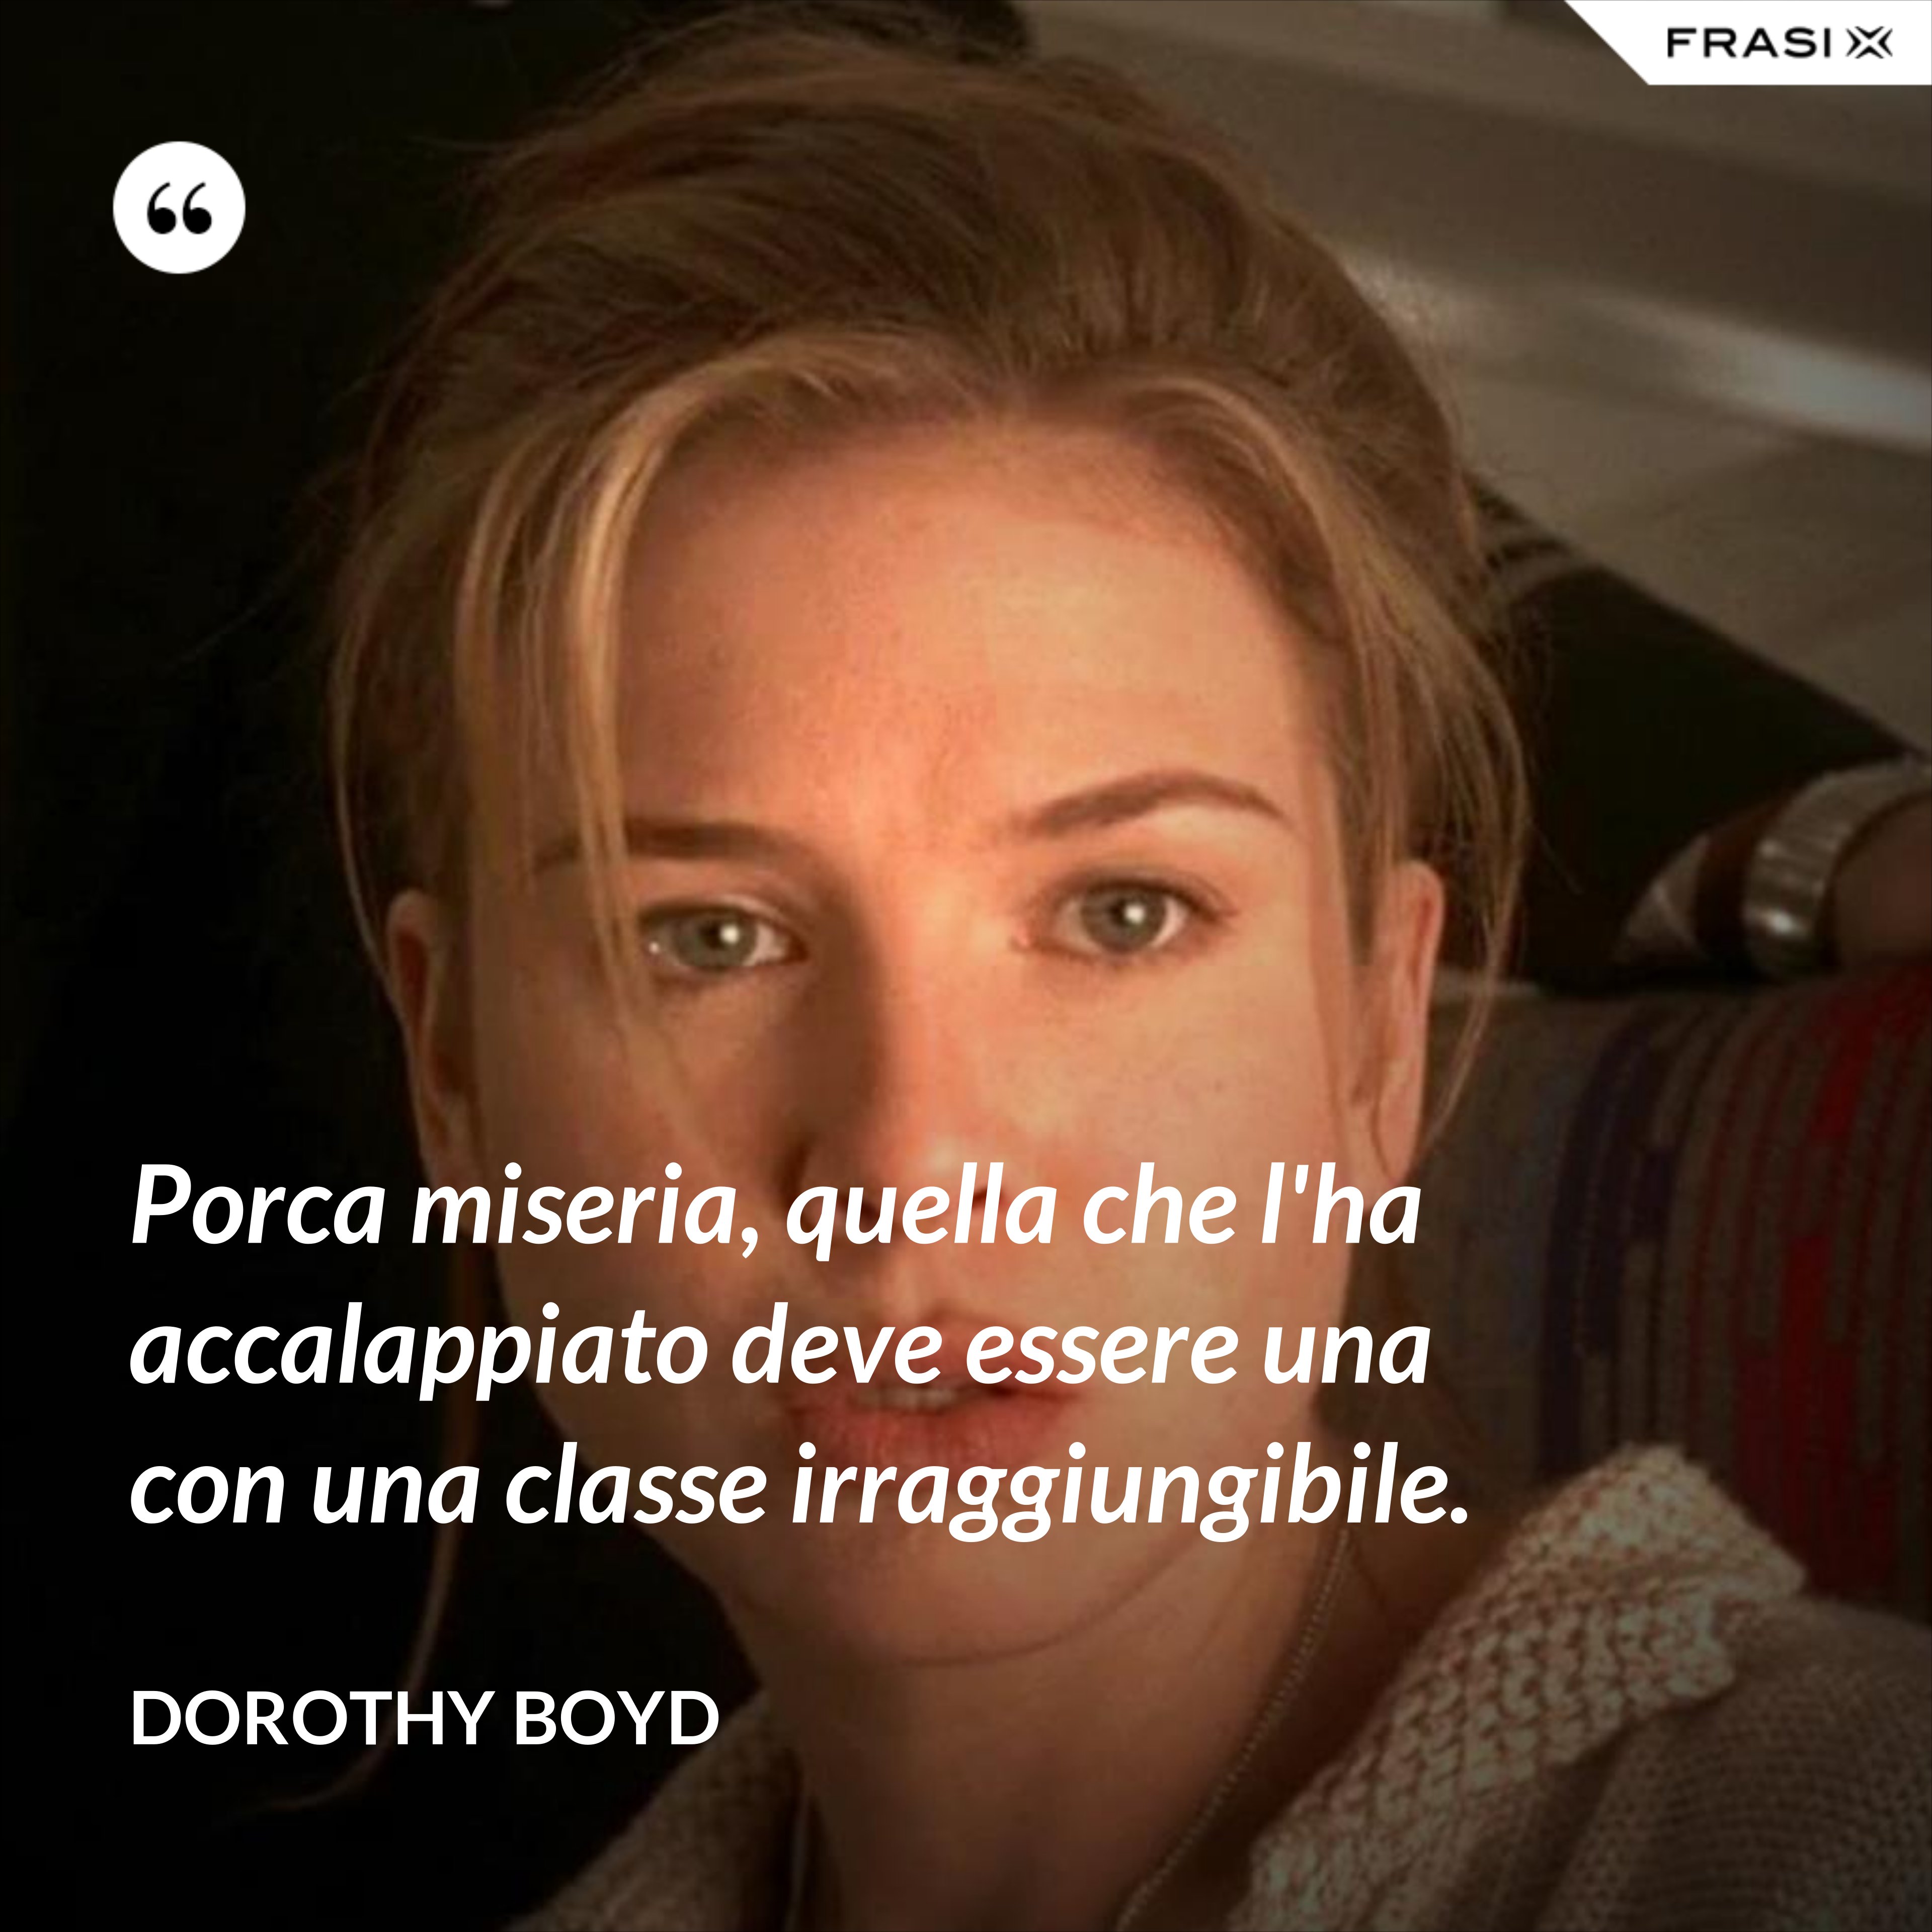 Porca miseria, quella che l'ha accalappiato deve essere una con una classe irraggiungibile. - Dorothy Boyd